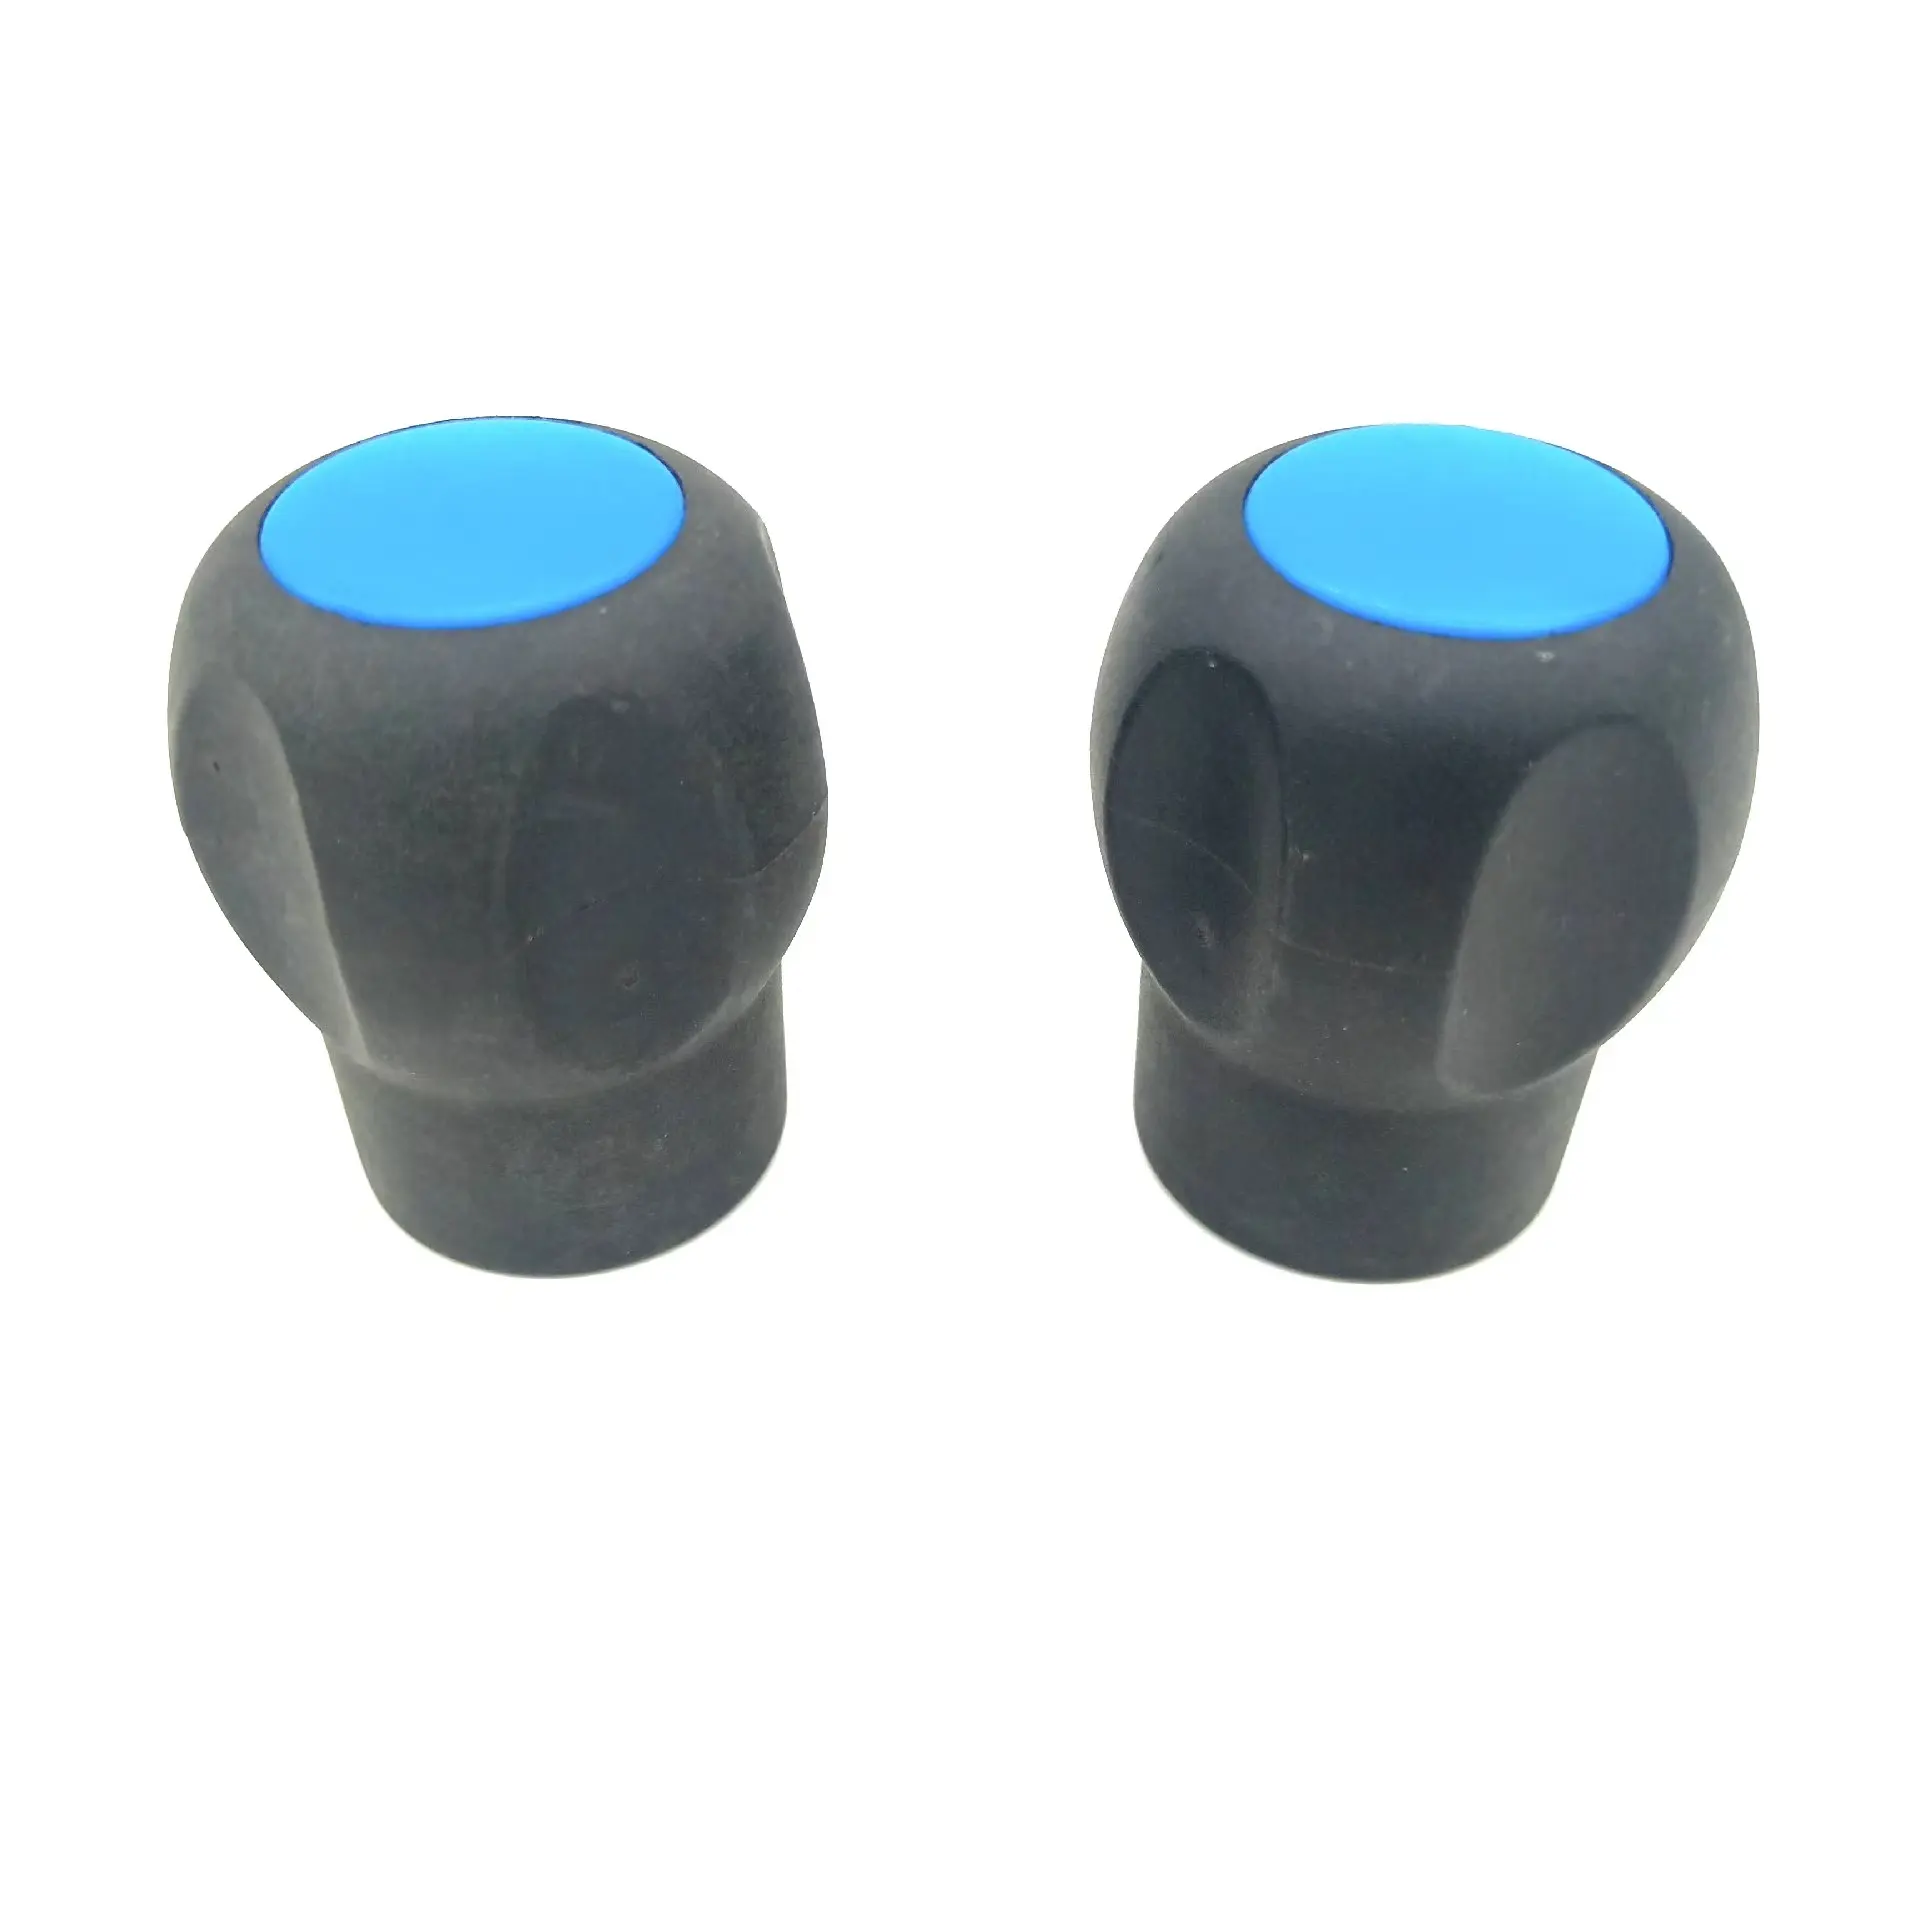 उच्च गुणवत्ता वाले प्लास्टिक दौर हाथ घुंडी मशीन नियंत्रण गेंद घुंडी गेंद संभाल एक प्रकार का प्लास्टिक गेंद घुंडी